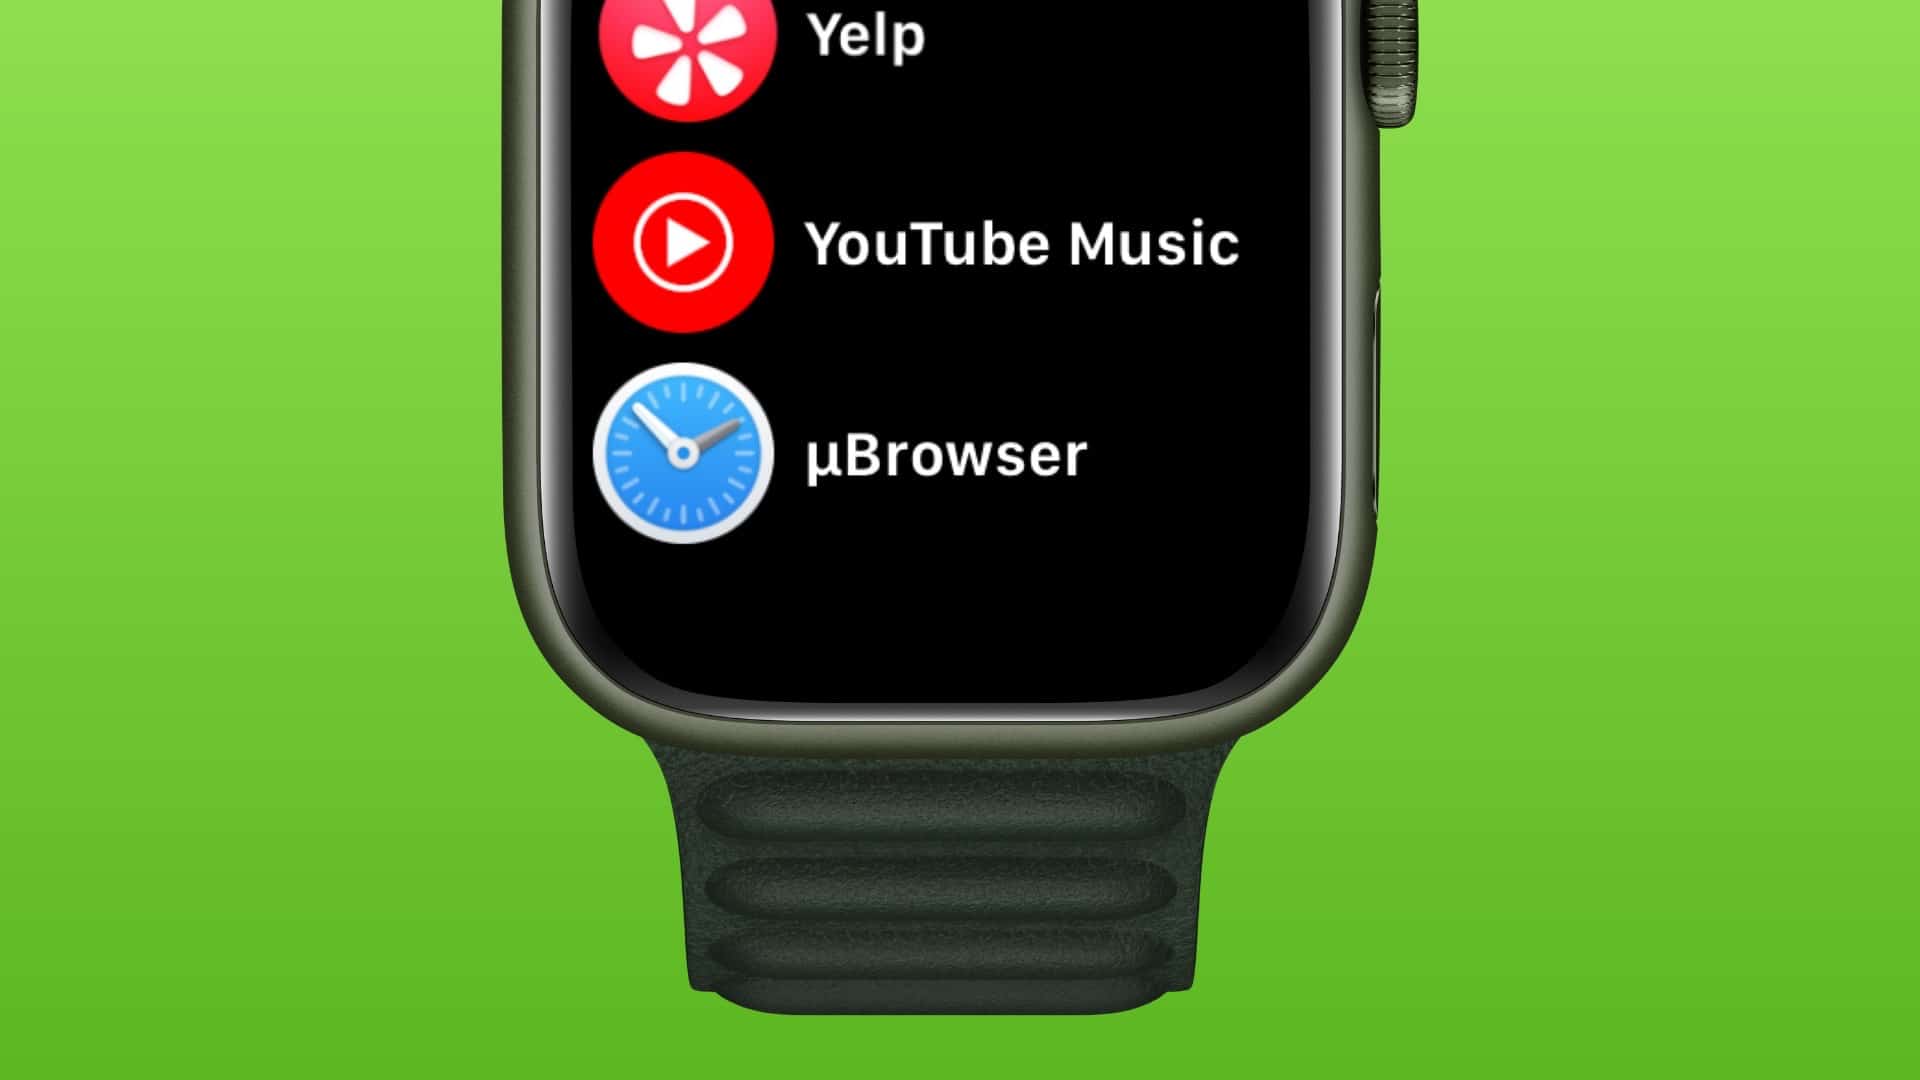 μBrowser em funcionamento no Apple Watch